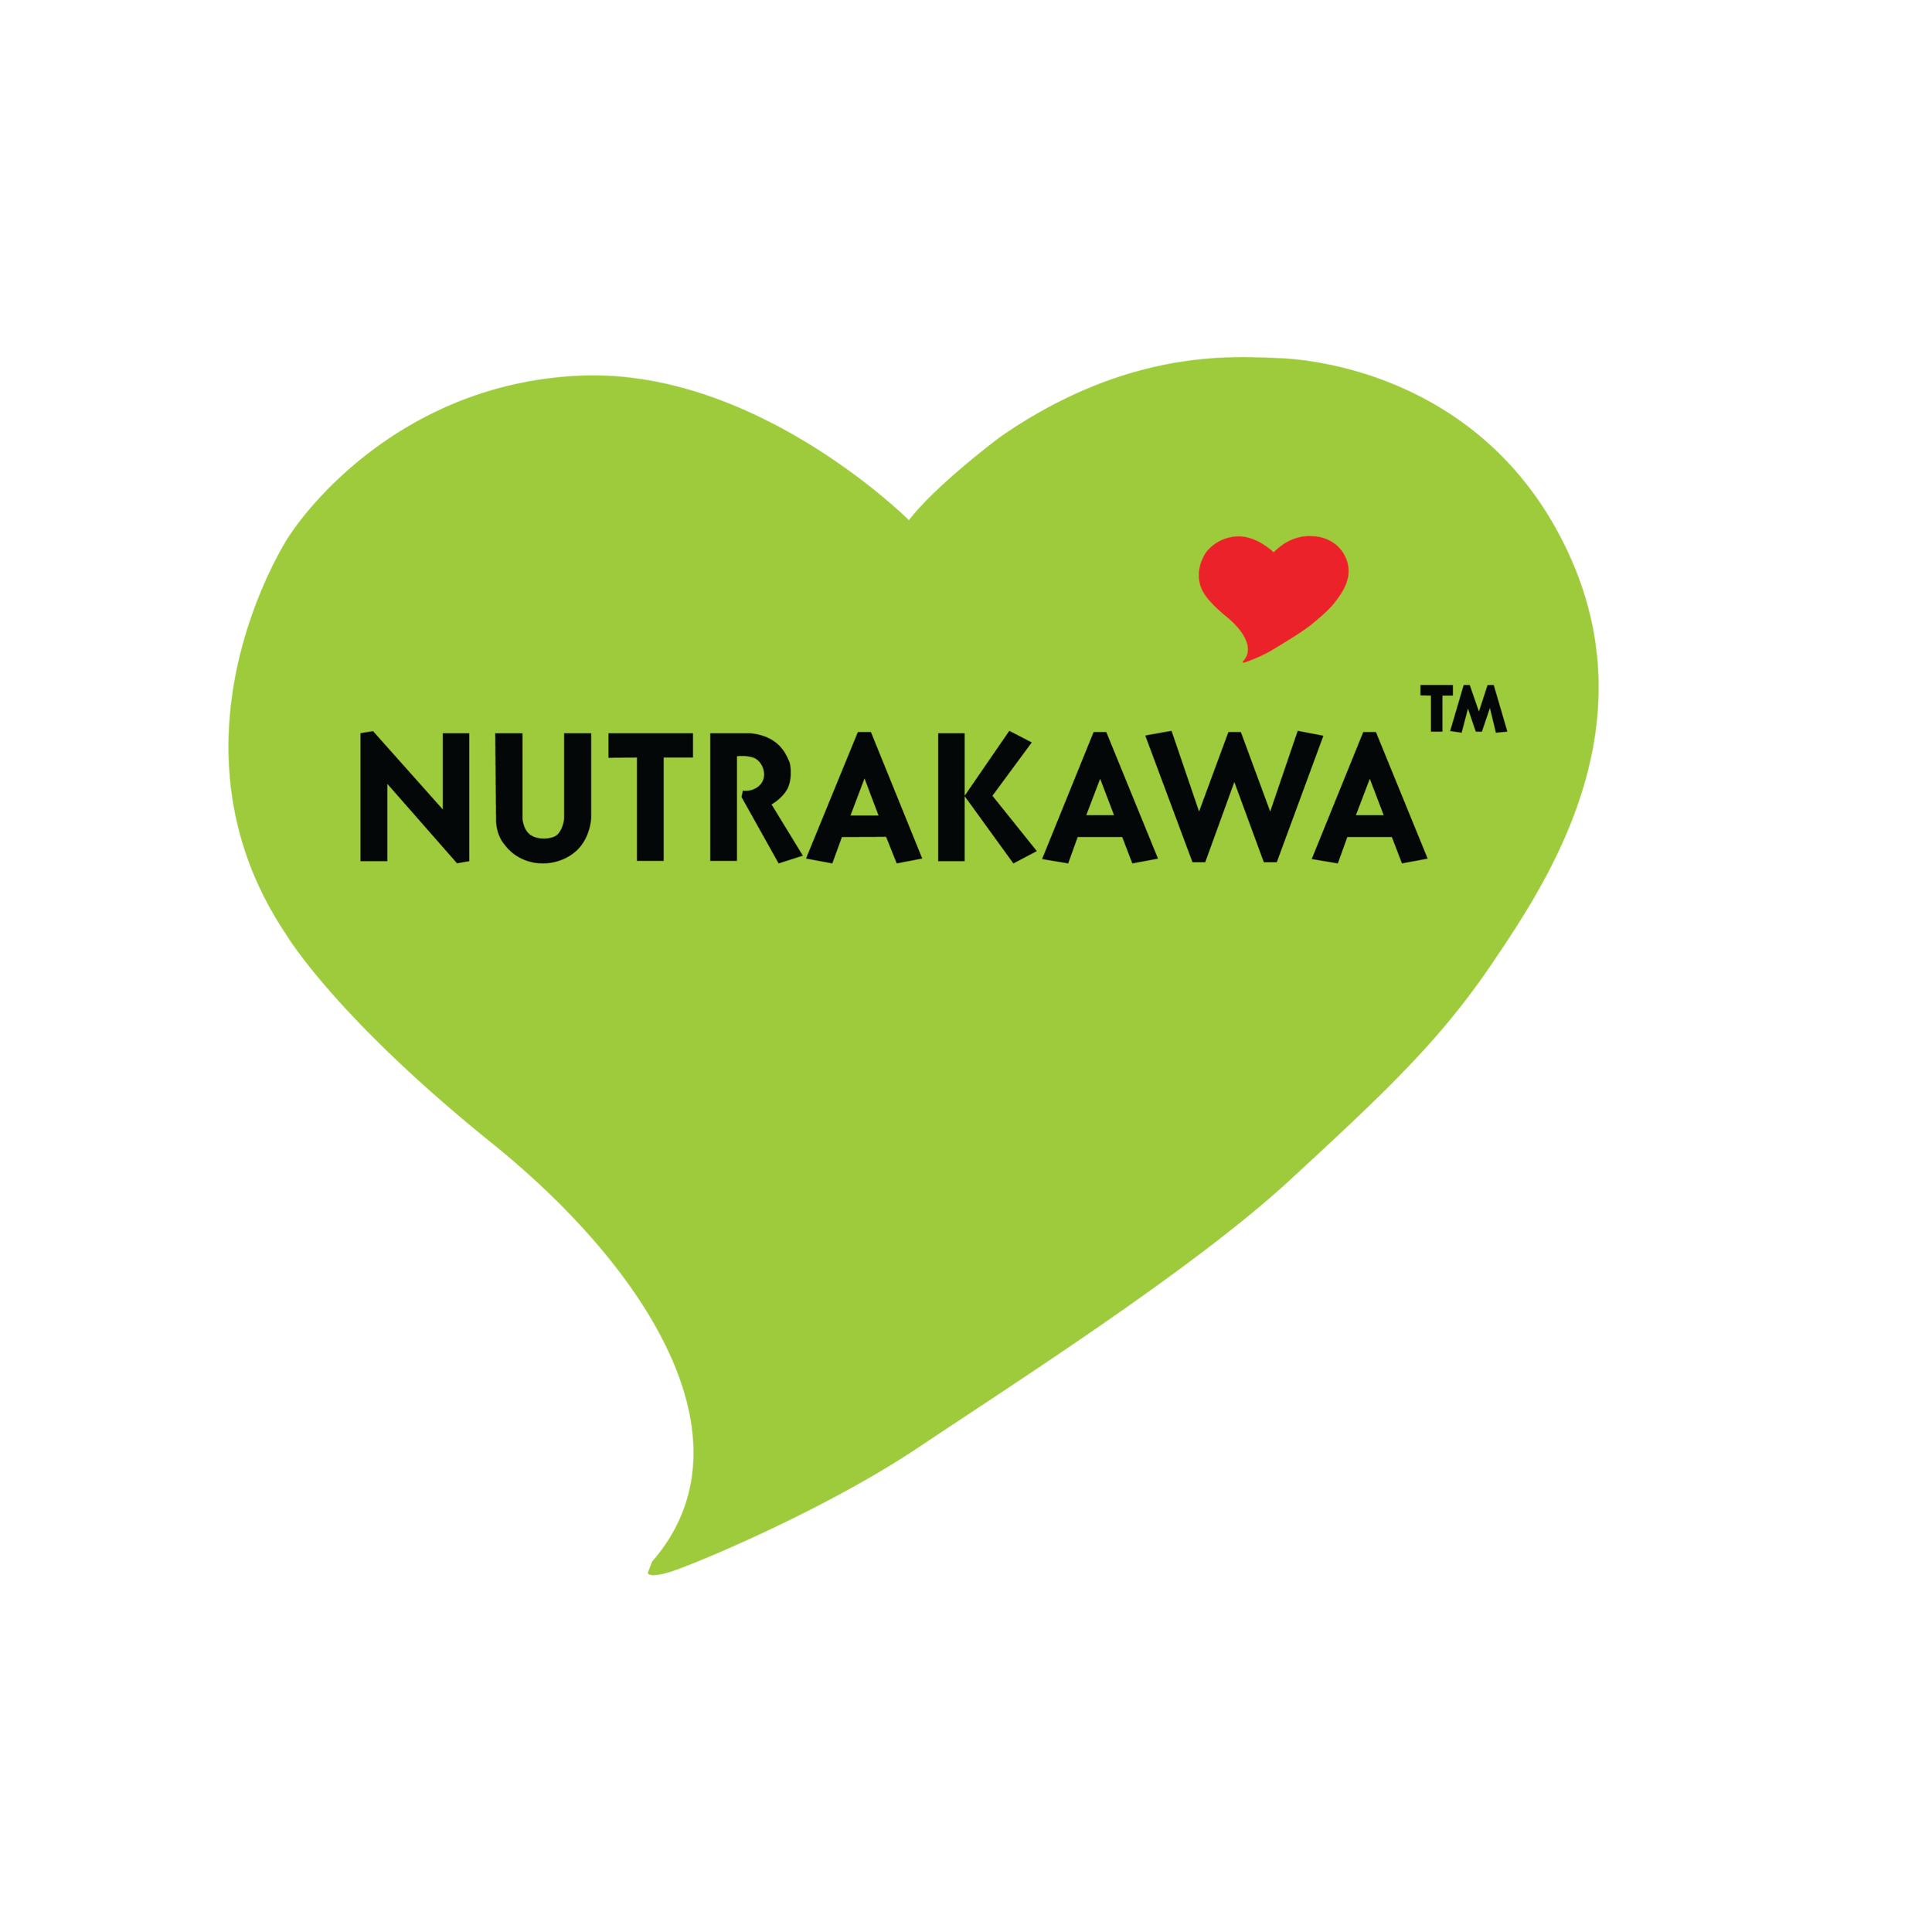 NUTRAKAWA™ New Zealand Limited